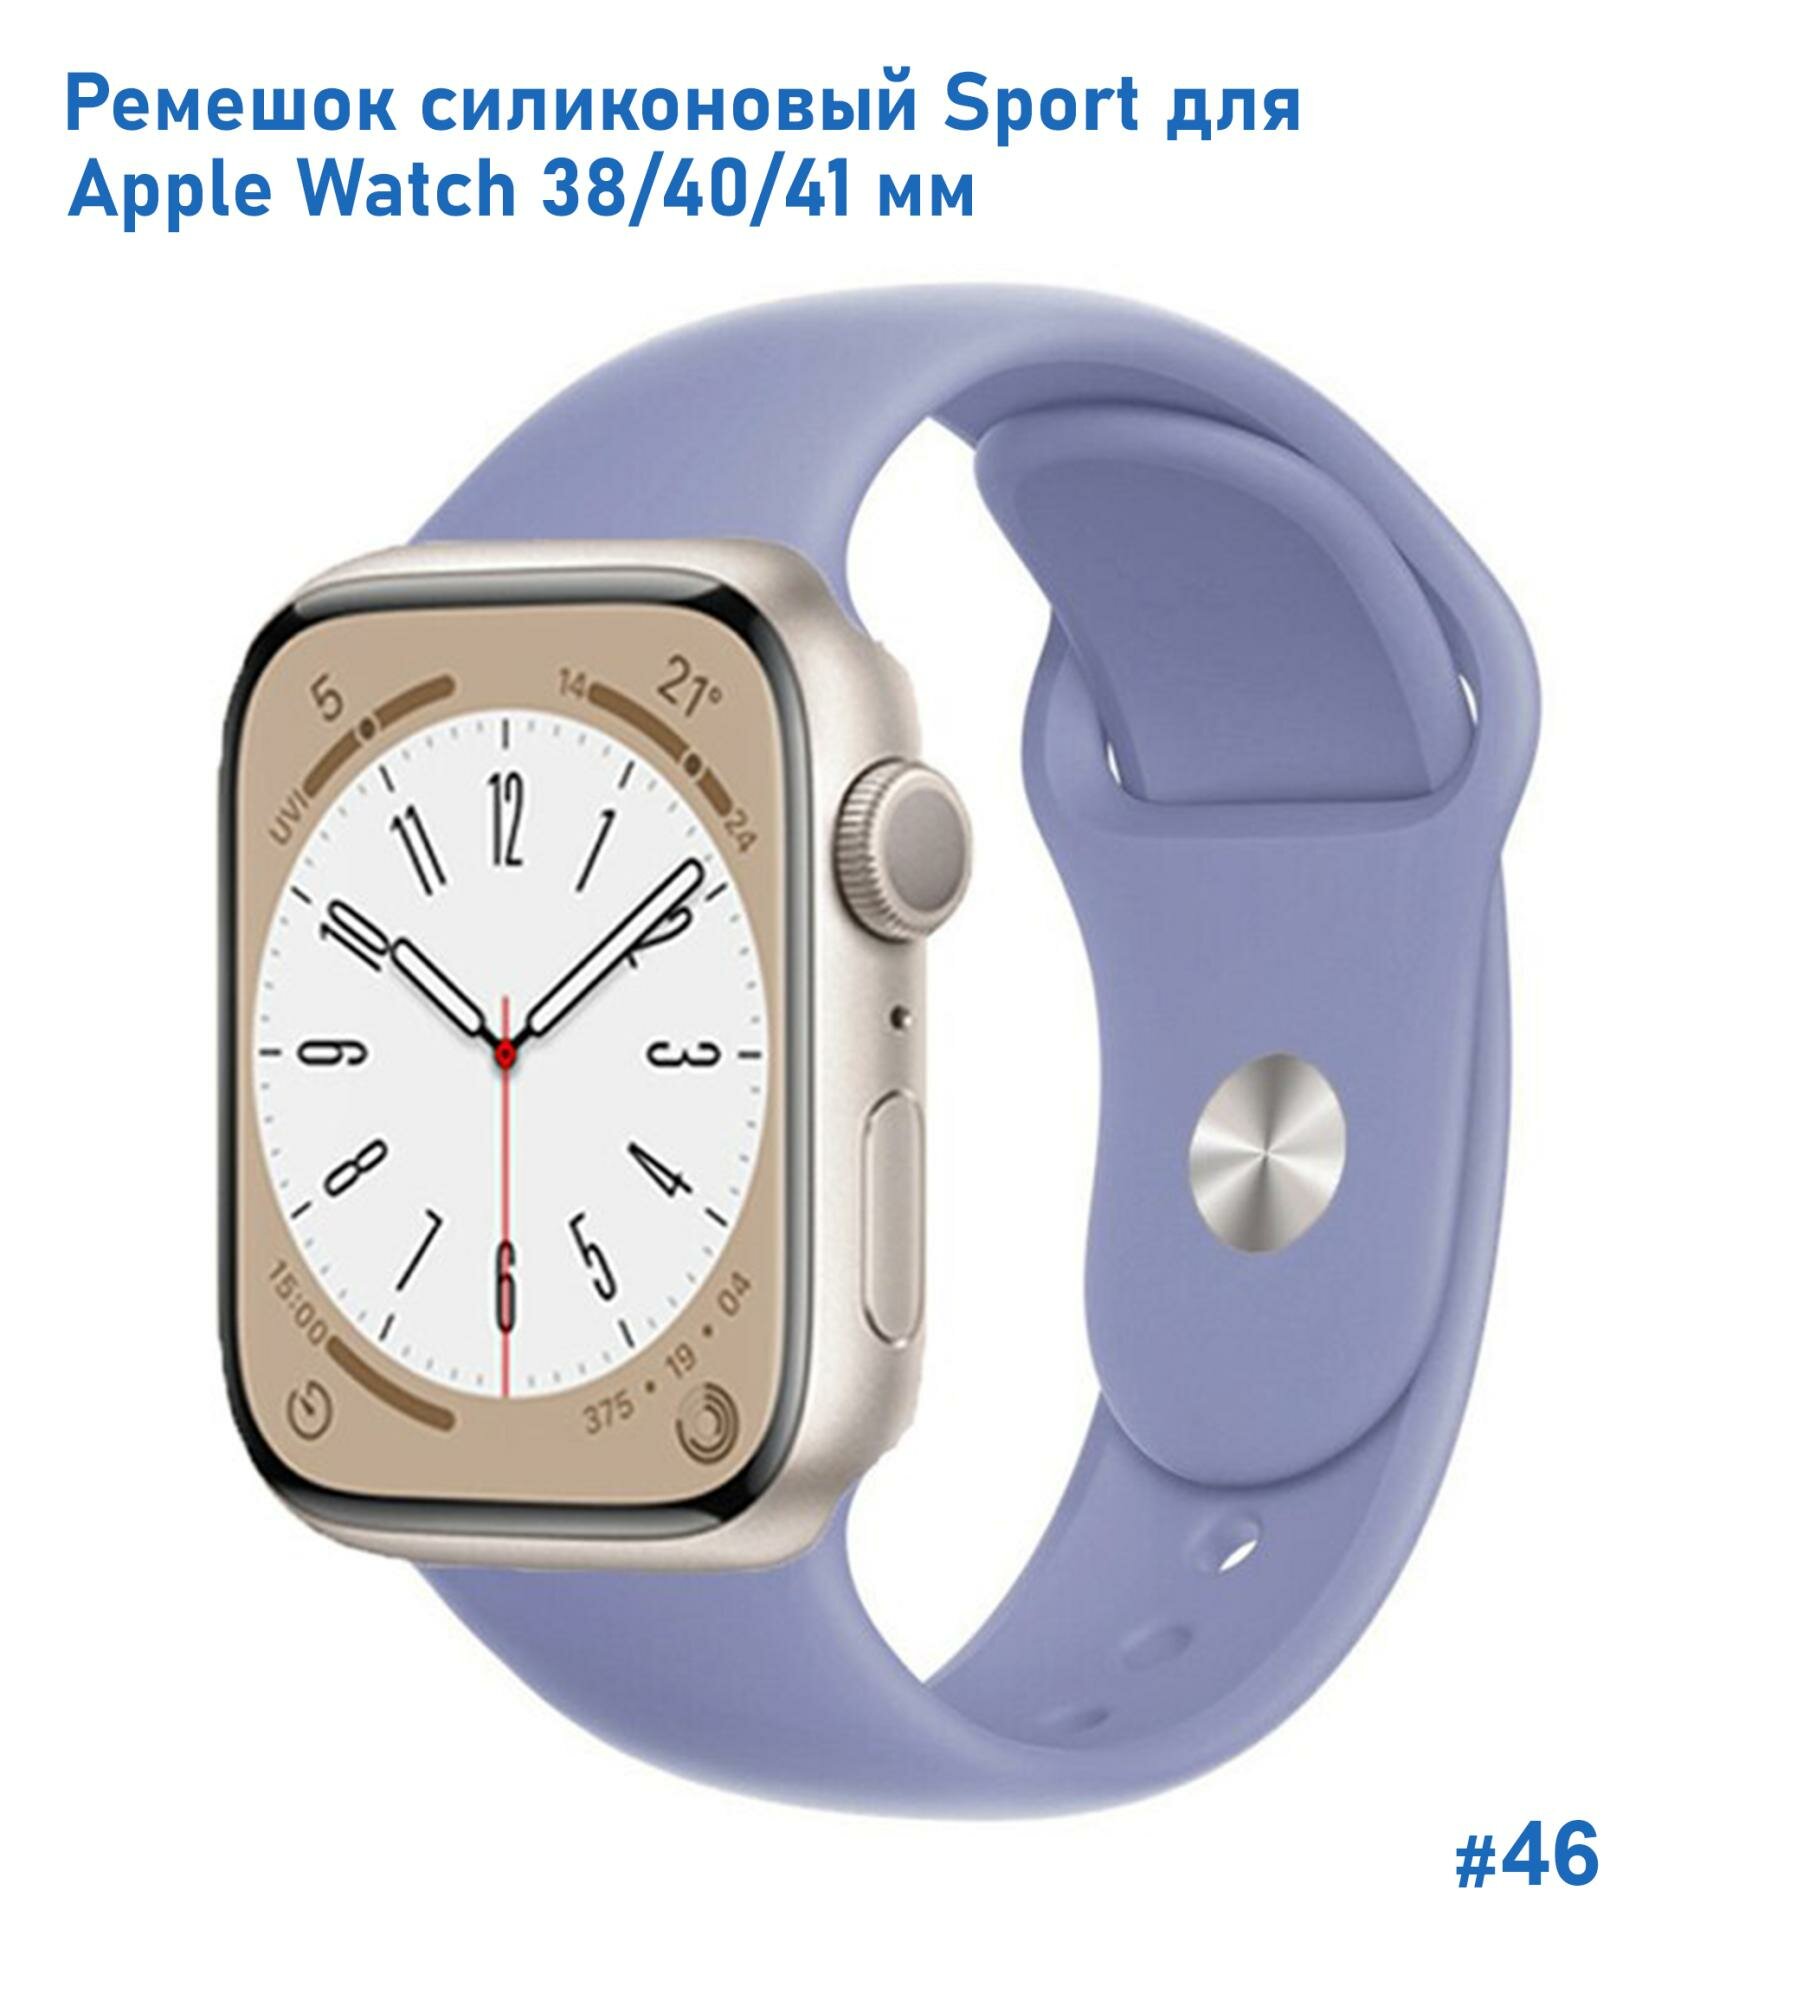 Ремешок силиконовый Sport для Apple Watch 38/40/41 мм, на кнопке, лавандовый (46)